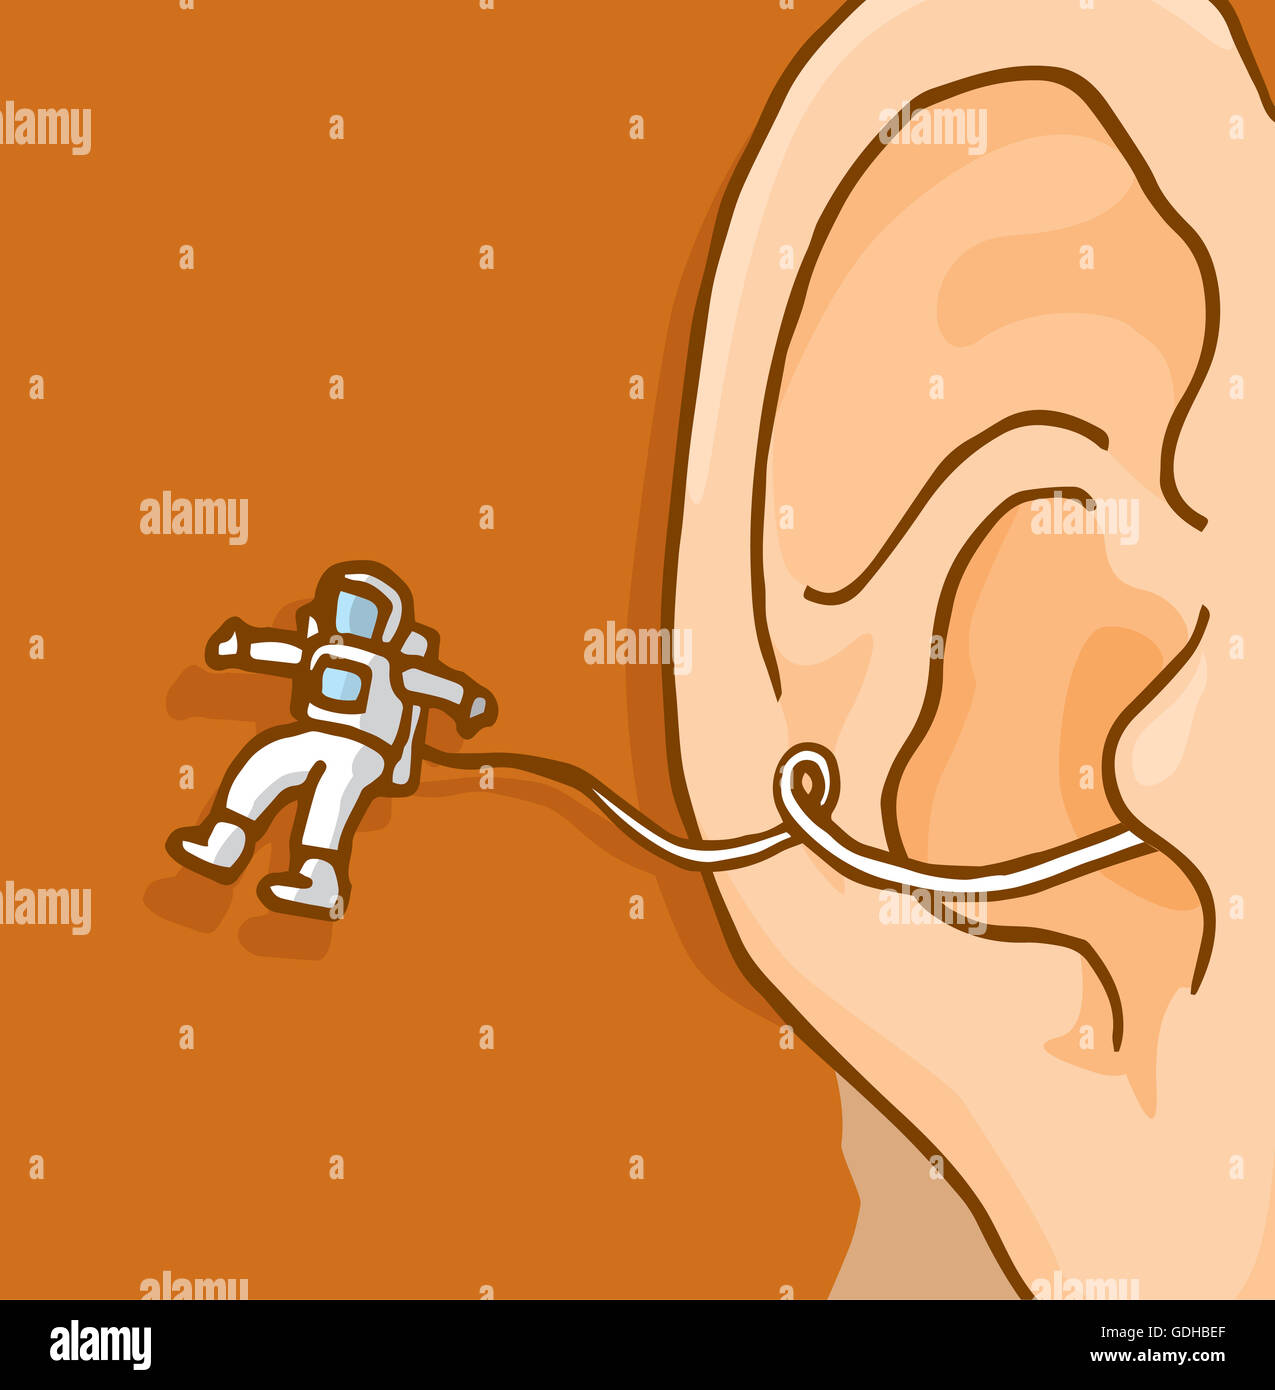 Cartoon-Illustration der Astronaut menschlichen Geistes zu erforschen Stockfoto